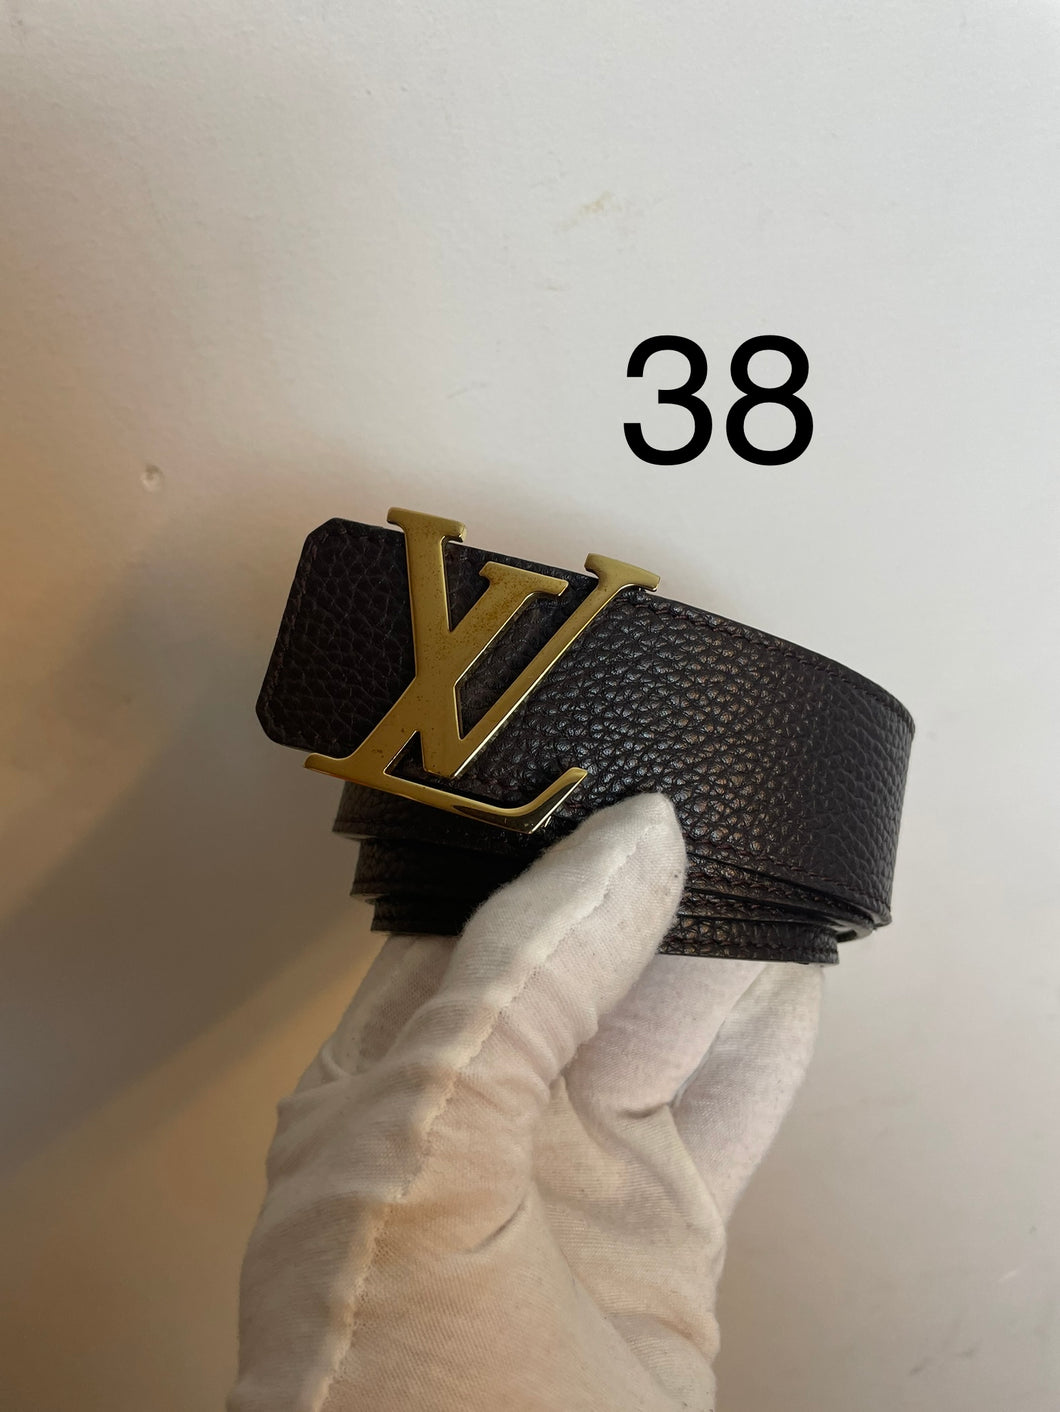 Louis Vuitton taurillon leather reversible initials belt gold buckle sz 38 (fits 32-36)